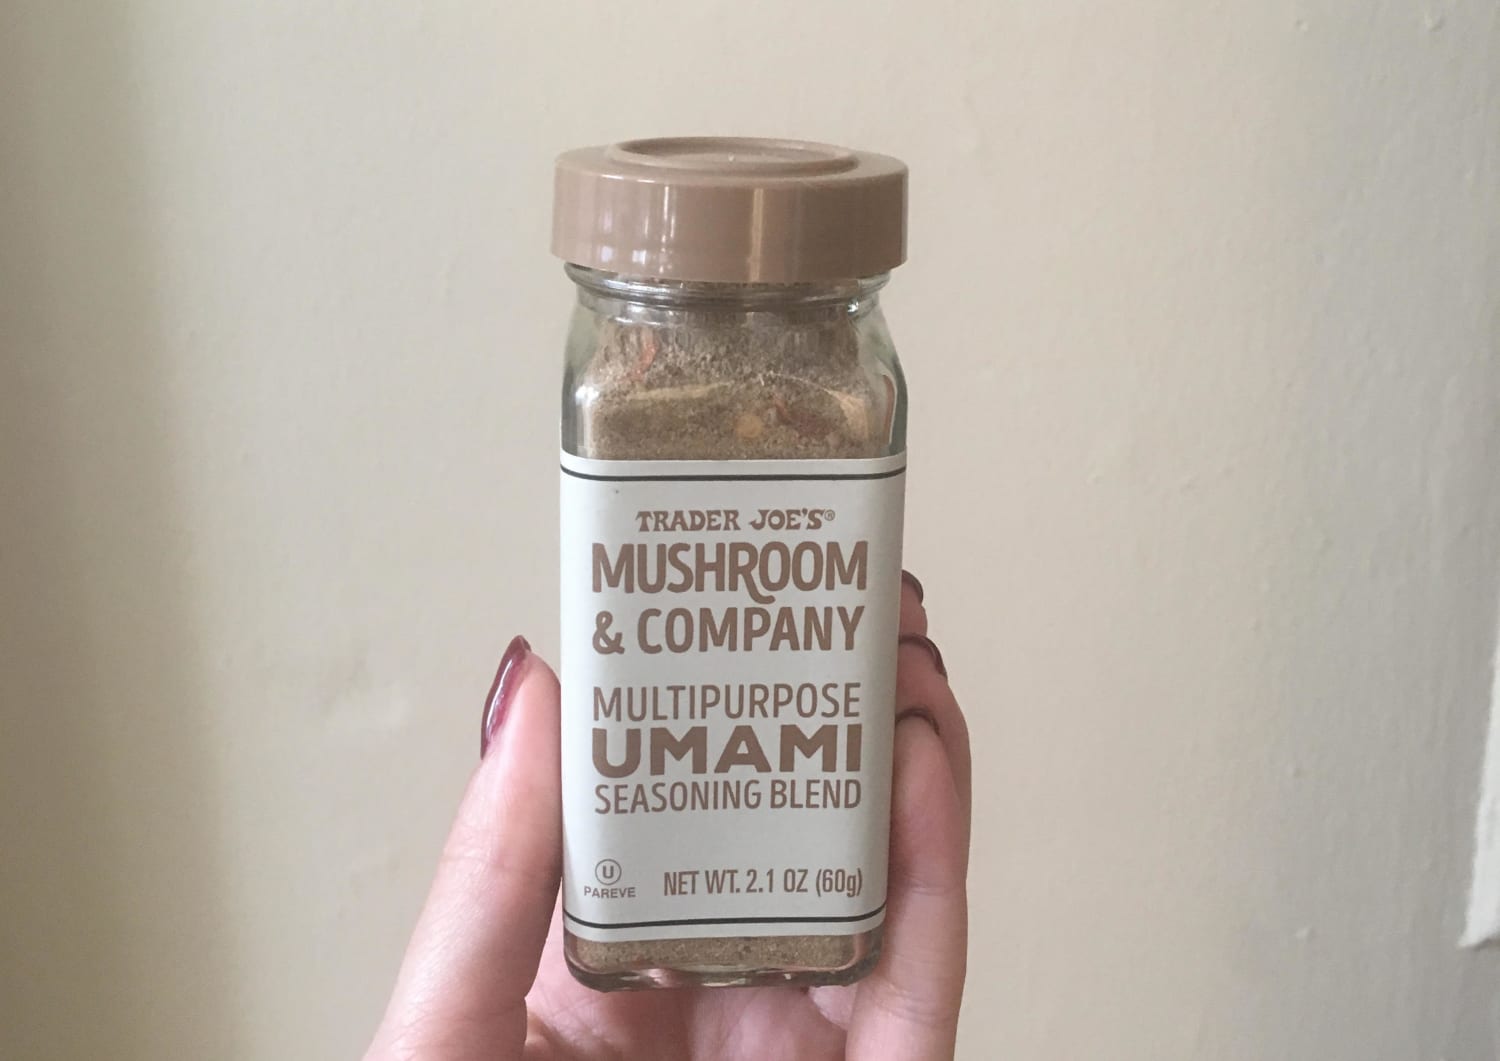 Mushroom & Company Multipurpose Umami Seasoning Blend